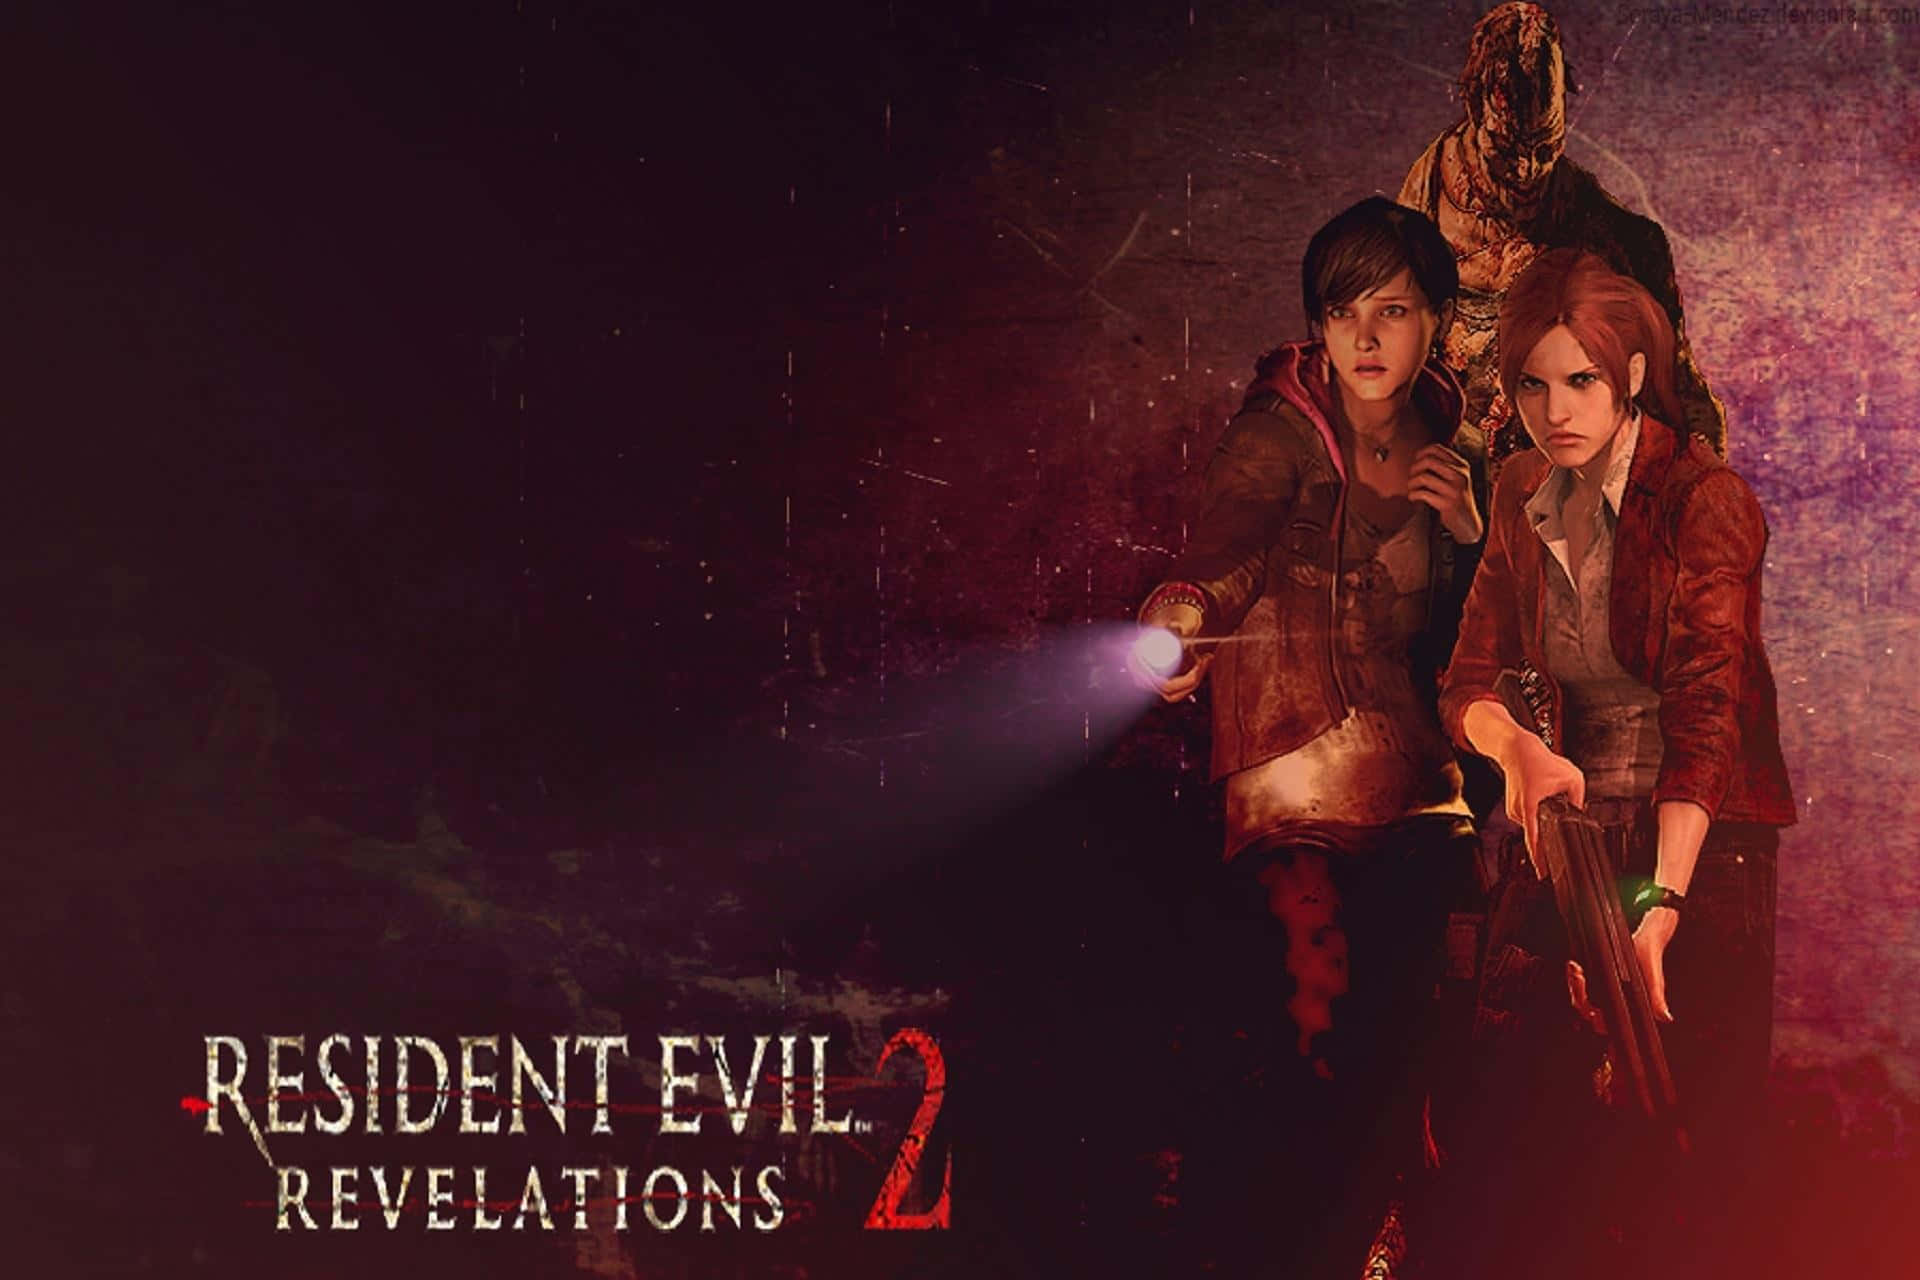 "Take refuge in the pulse-pounding horror of Resident Evil Revelations 2!" Wallpaper